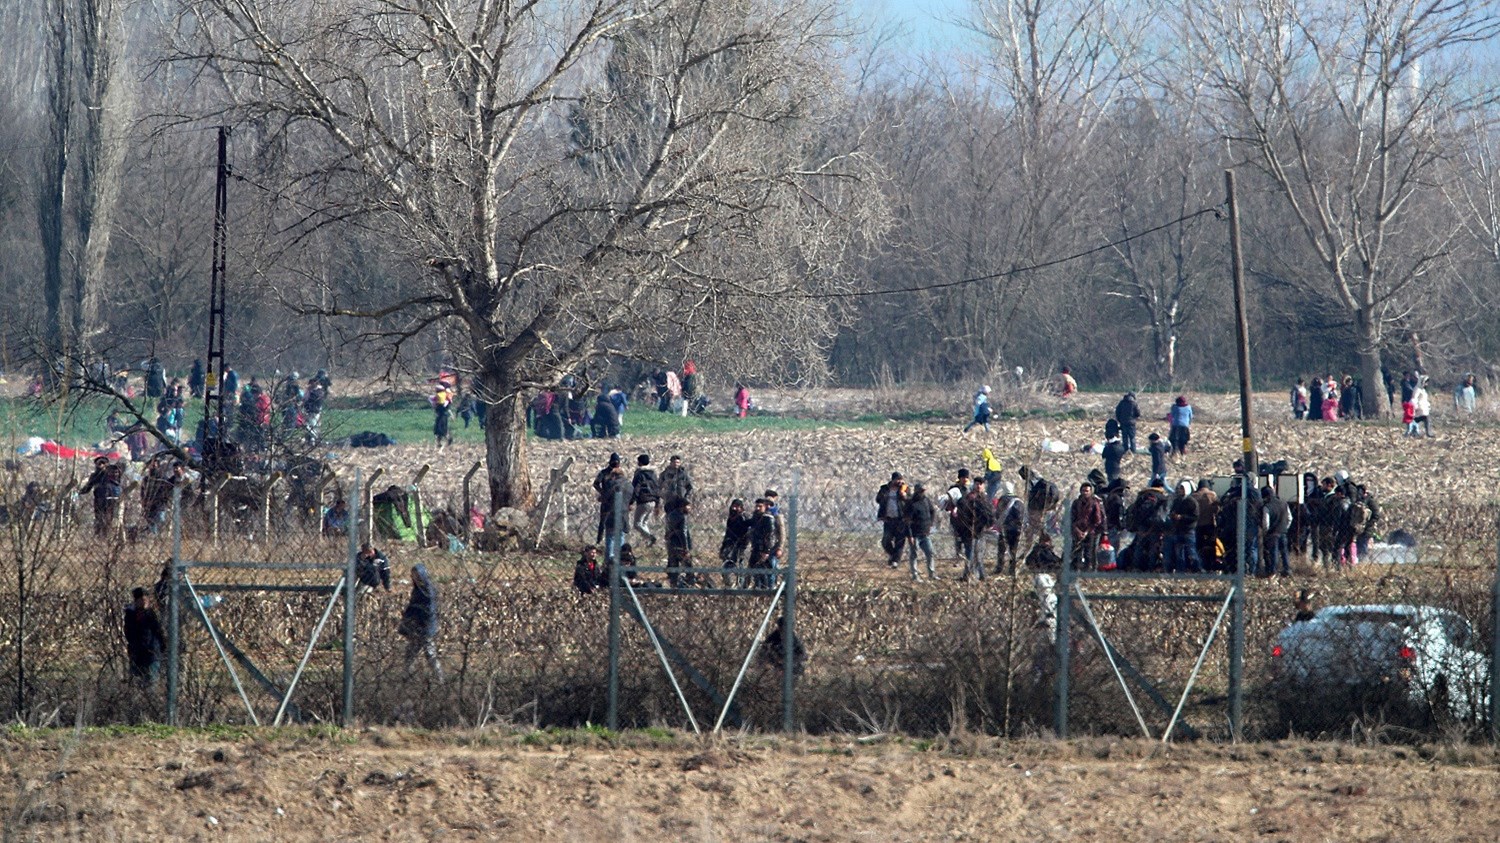 Έβρος: Διπλασιάστηκαν οι μεταναστευτικές ροές – 400 απόπειρες εισόδου σε ένα 24ωρο